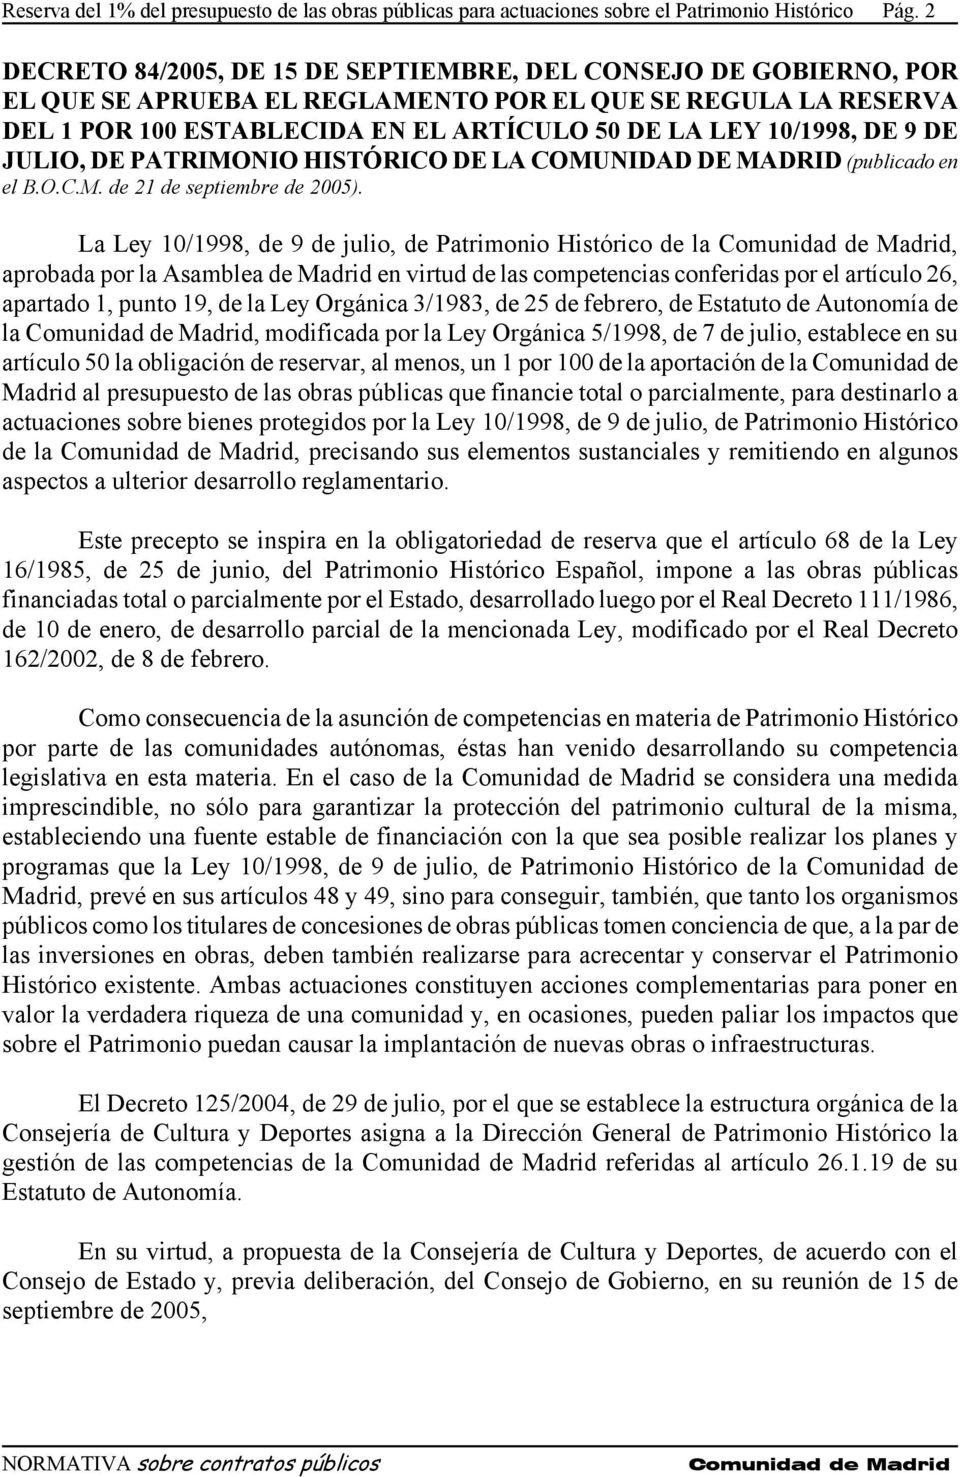 9 DE JULIO, DE PATRIMONIO HISTÓRICO DE LA COMUNIDAD DE MADRID (publicado en el B.O.C.M. de 21 de septiembre de 2005).